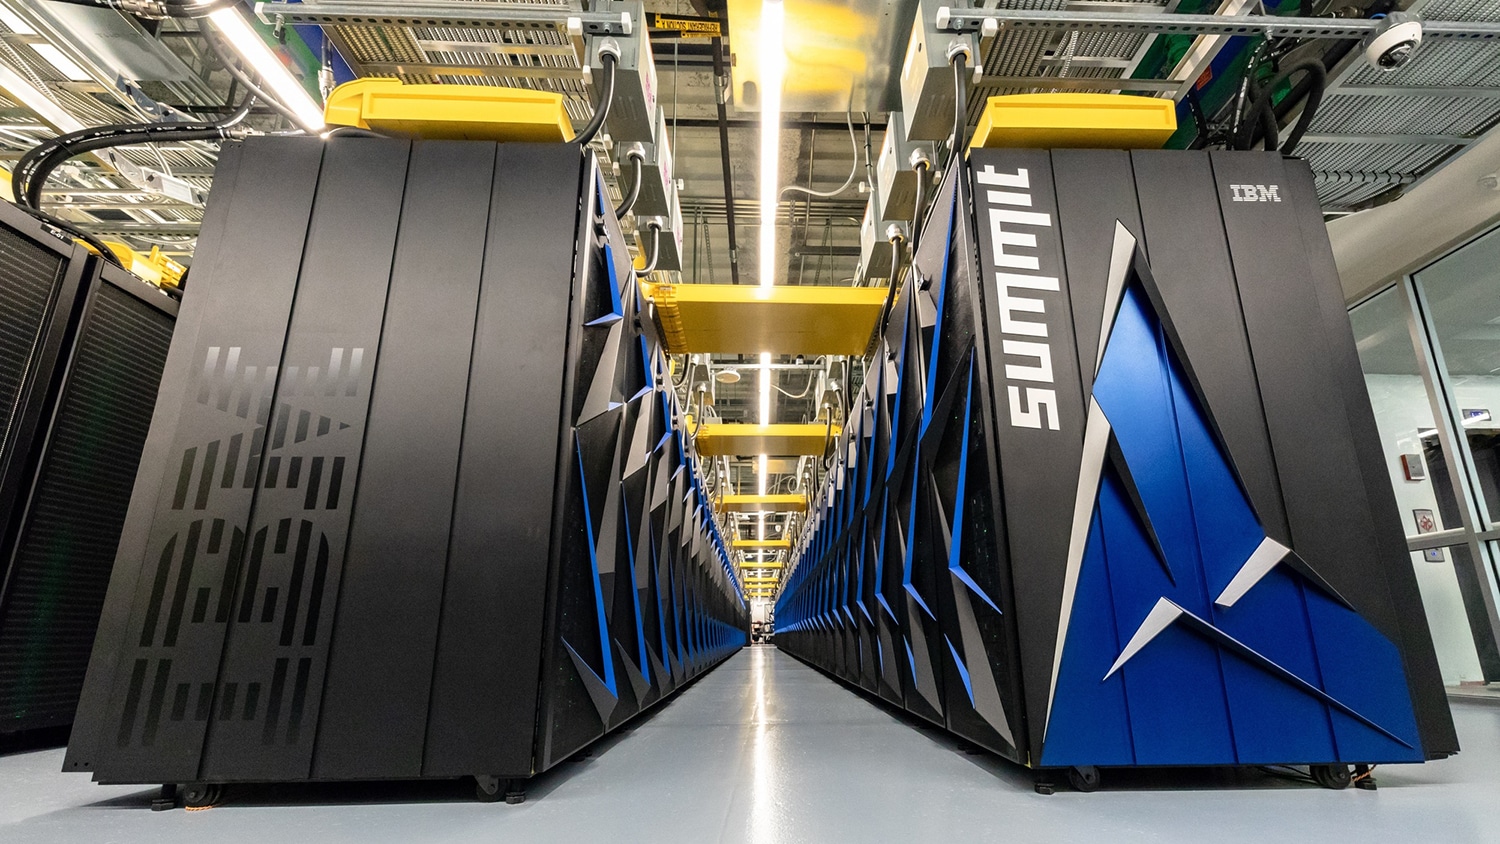 Summit, a 200 petaflop supercomputer.